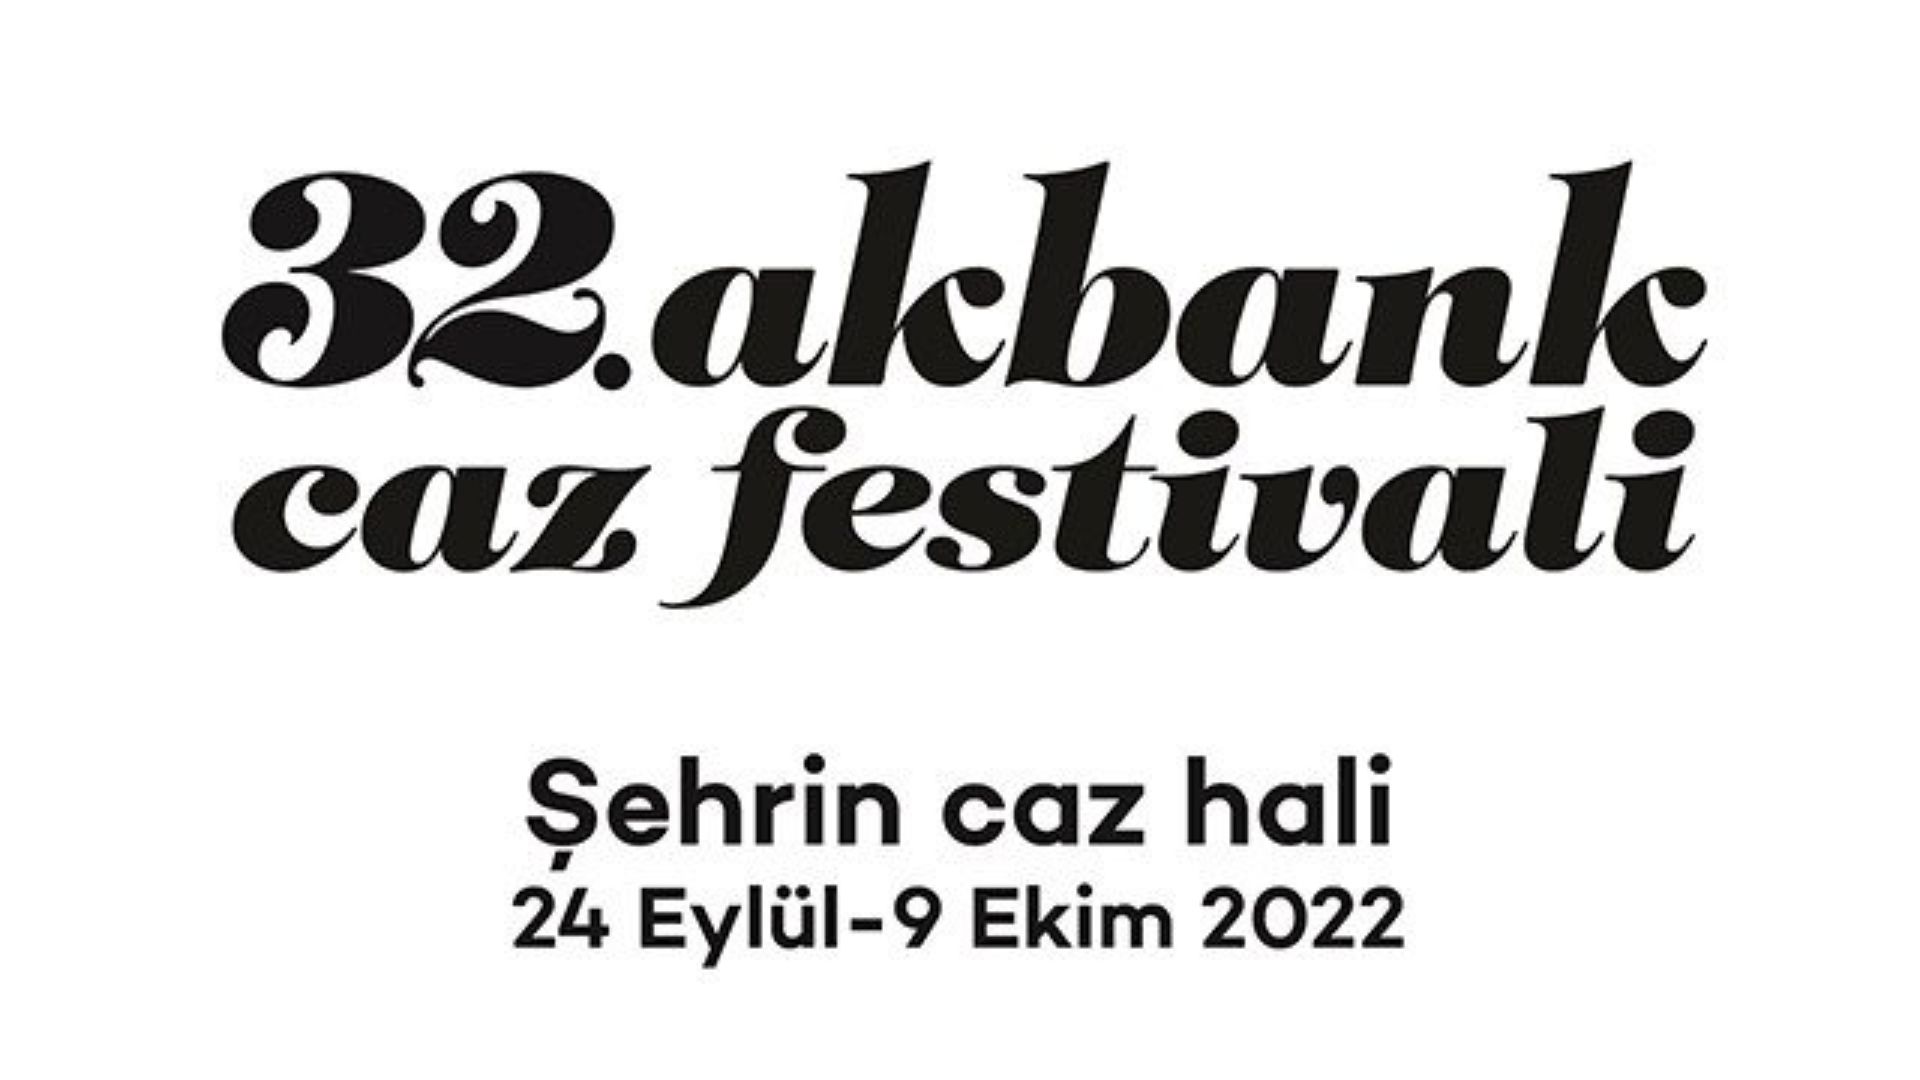 32. akbank caz festivali burclara gore etkinlik rehberi